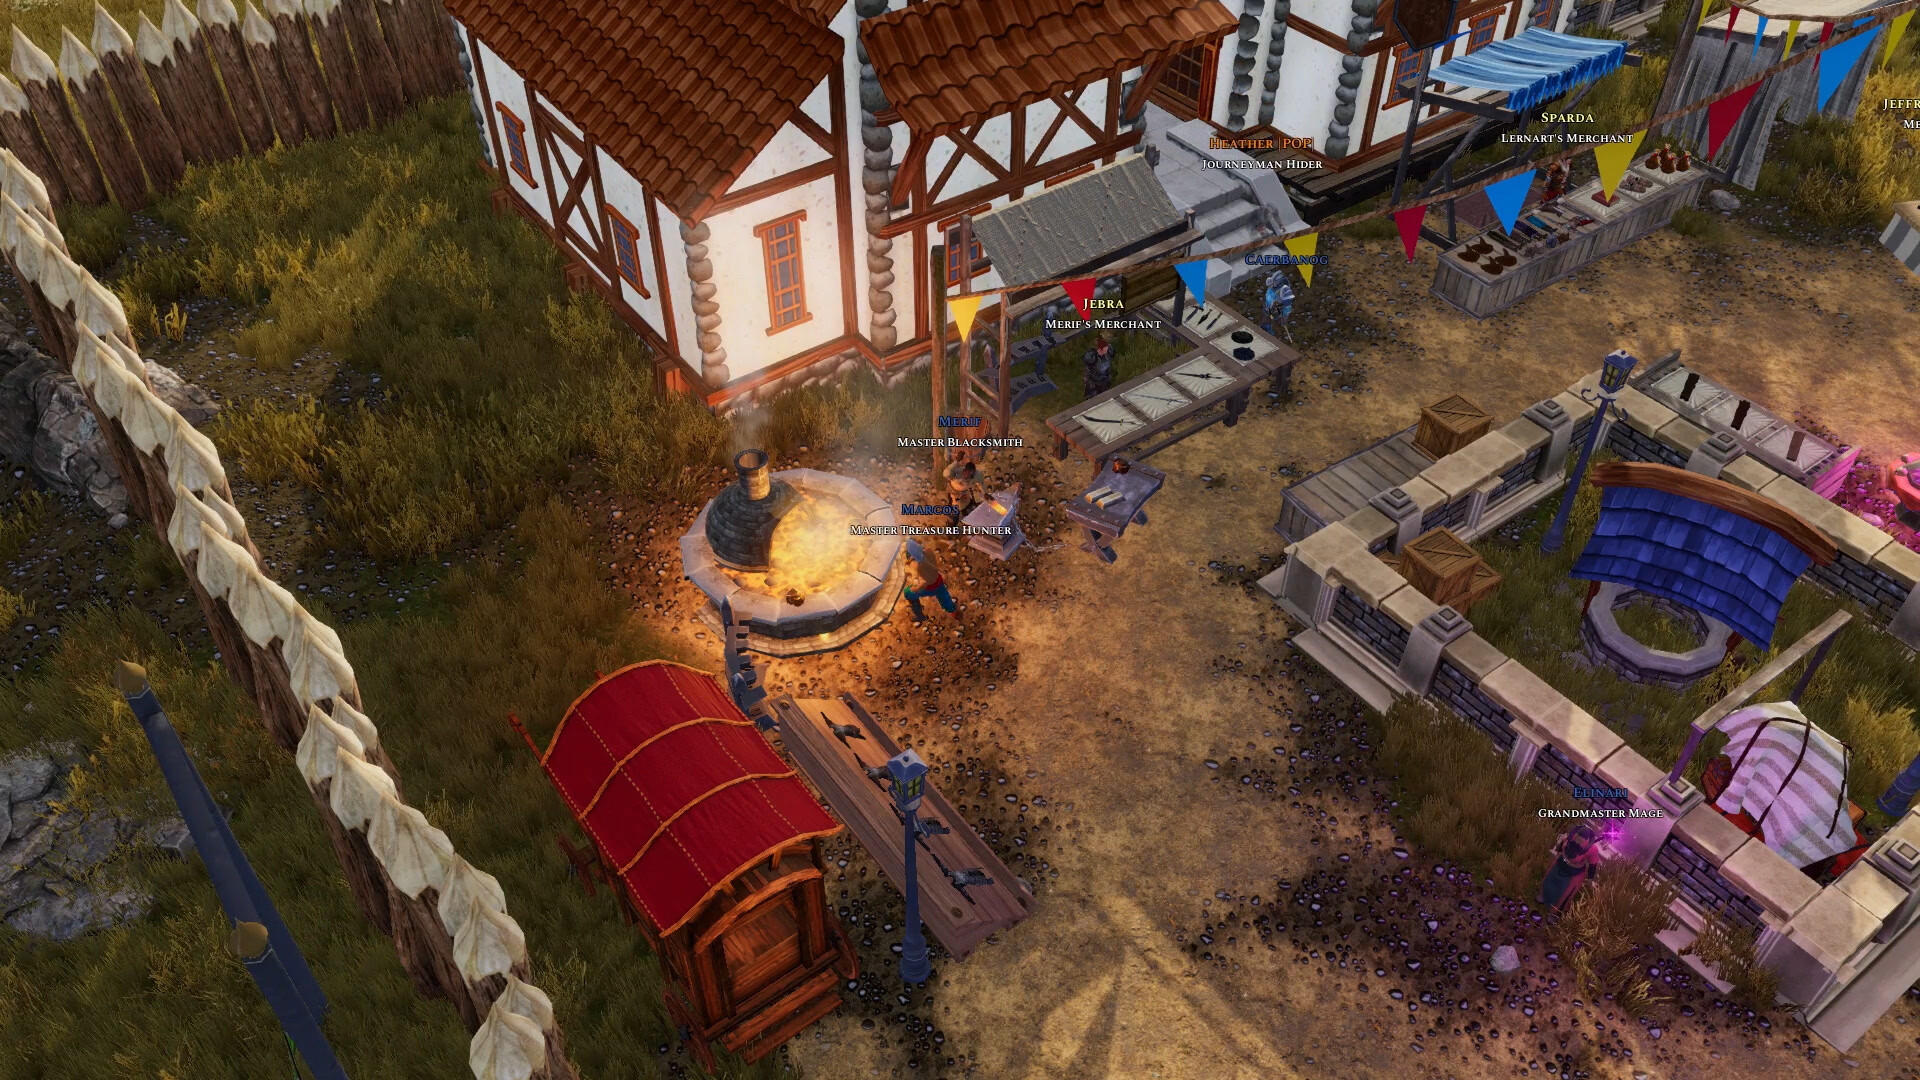 Legends of Aria Classic screenshot game